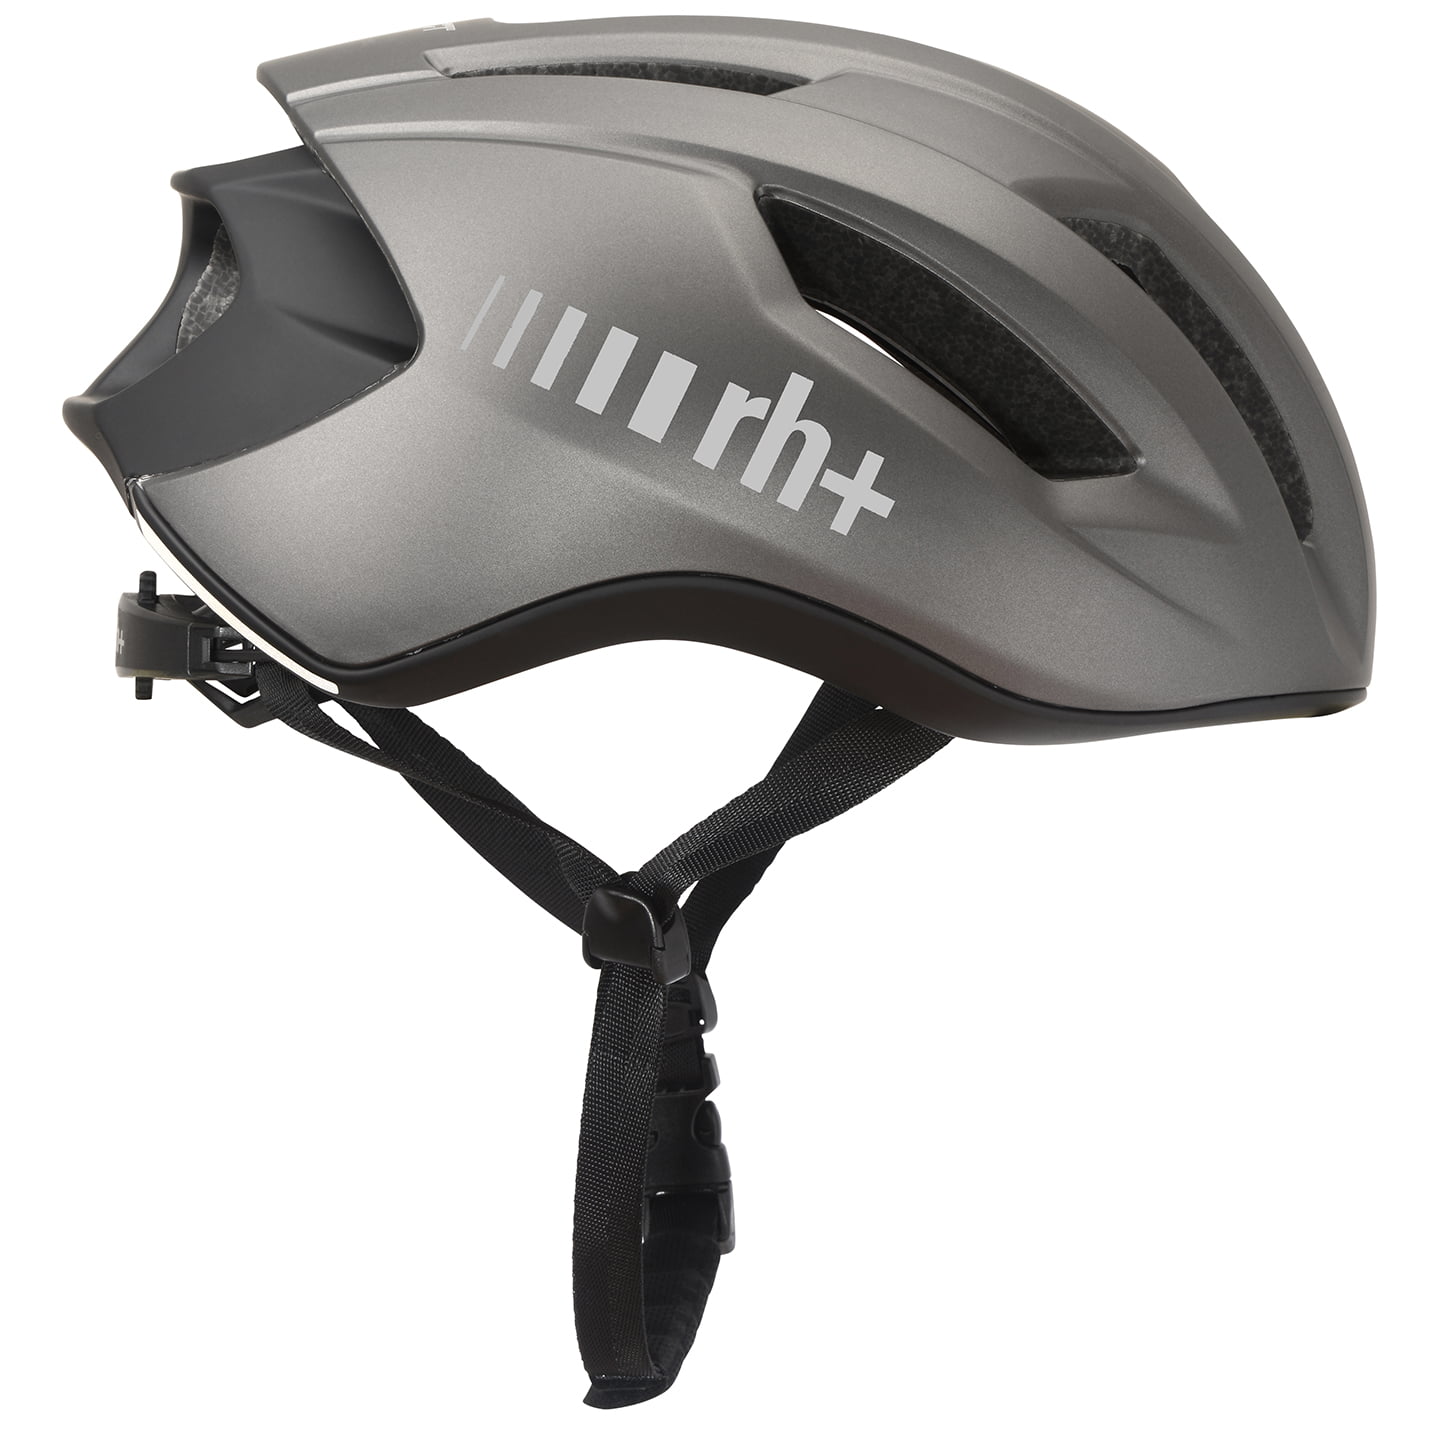 rh+ Compact 2023 Road Bike Helmet Road Bike Helmet, Unisex (women / men), size XS-M